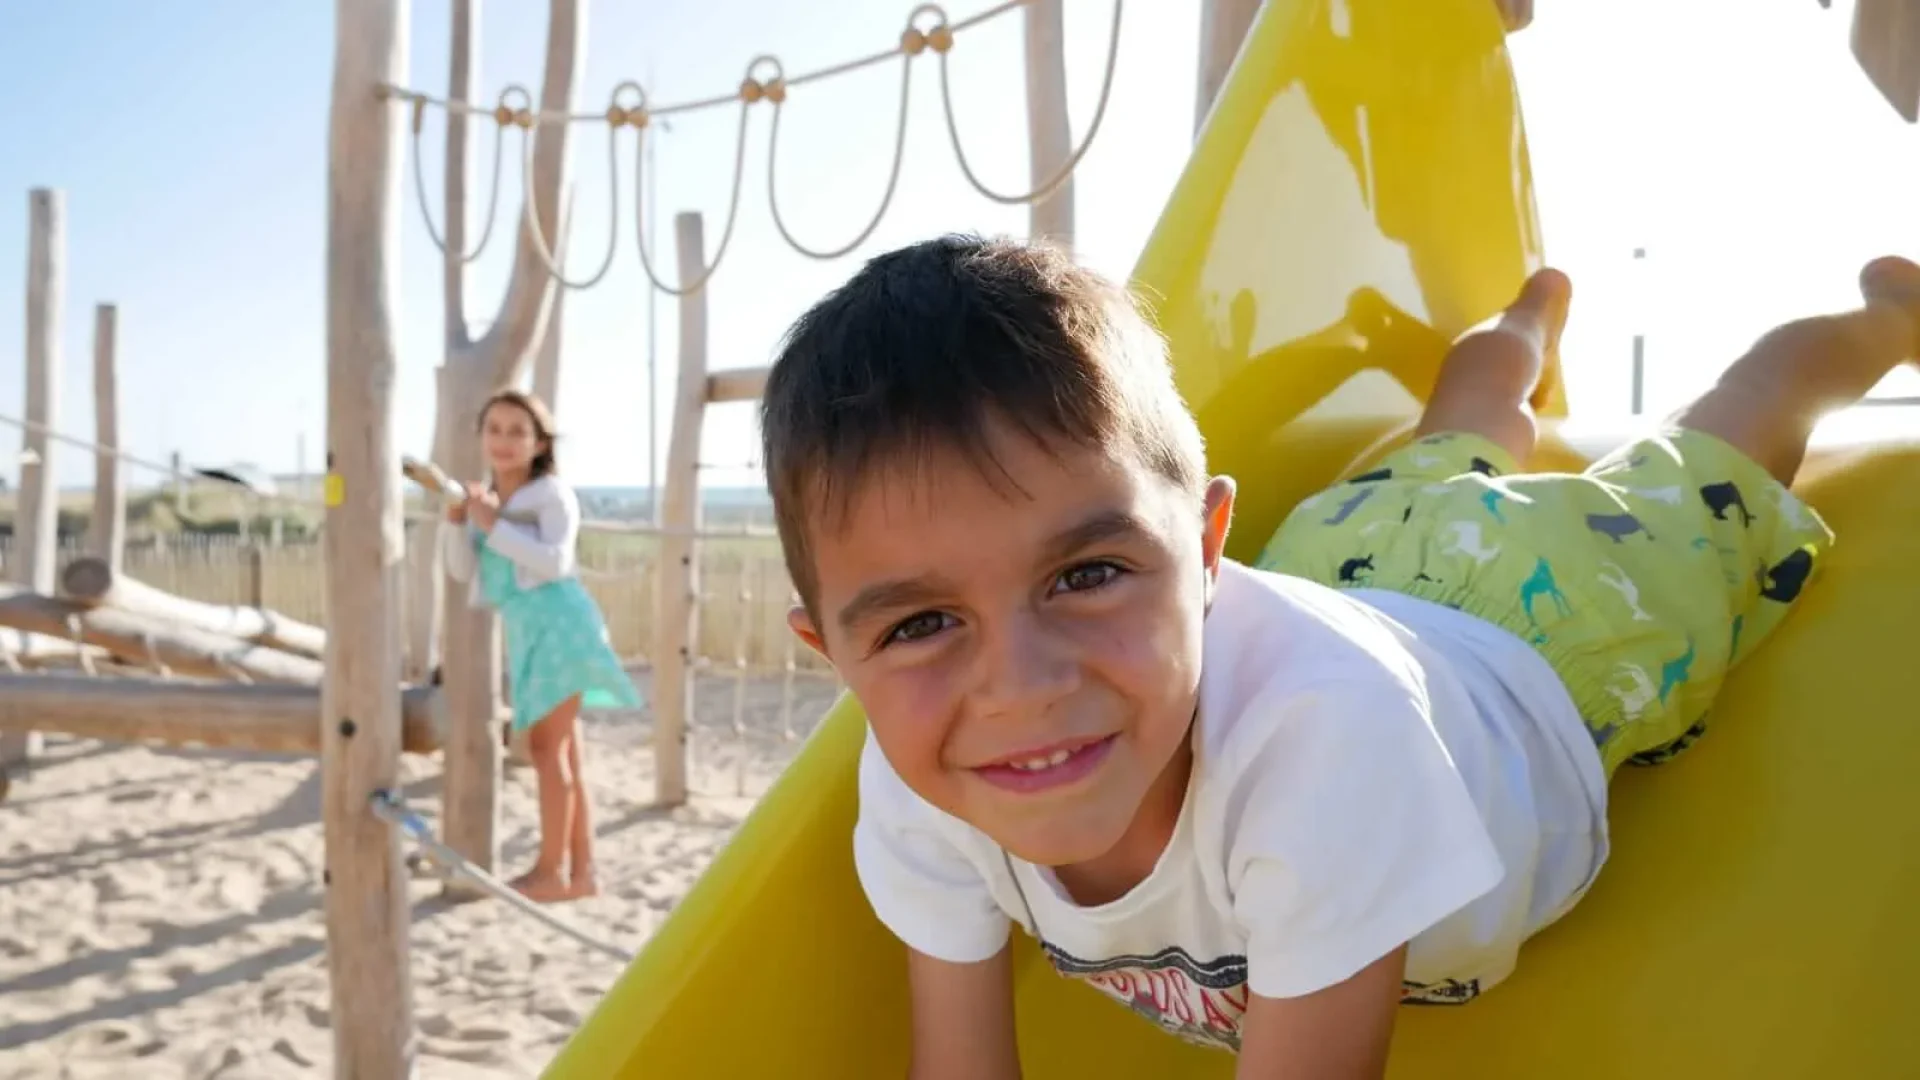 Child smiling on a slide